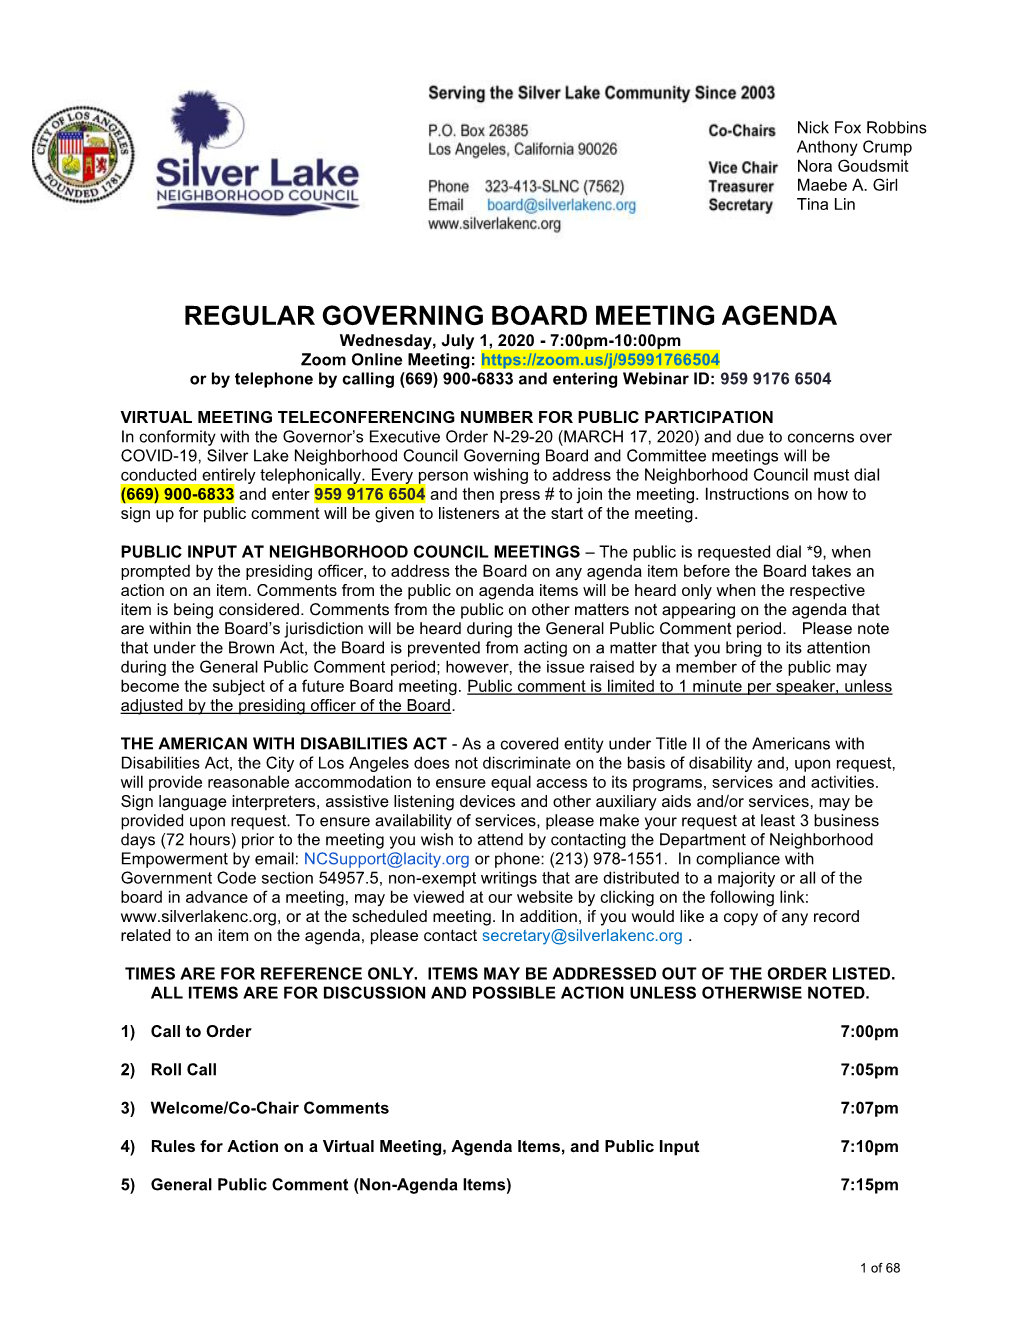 Regular Governing Board Meeting Agenda